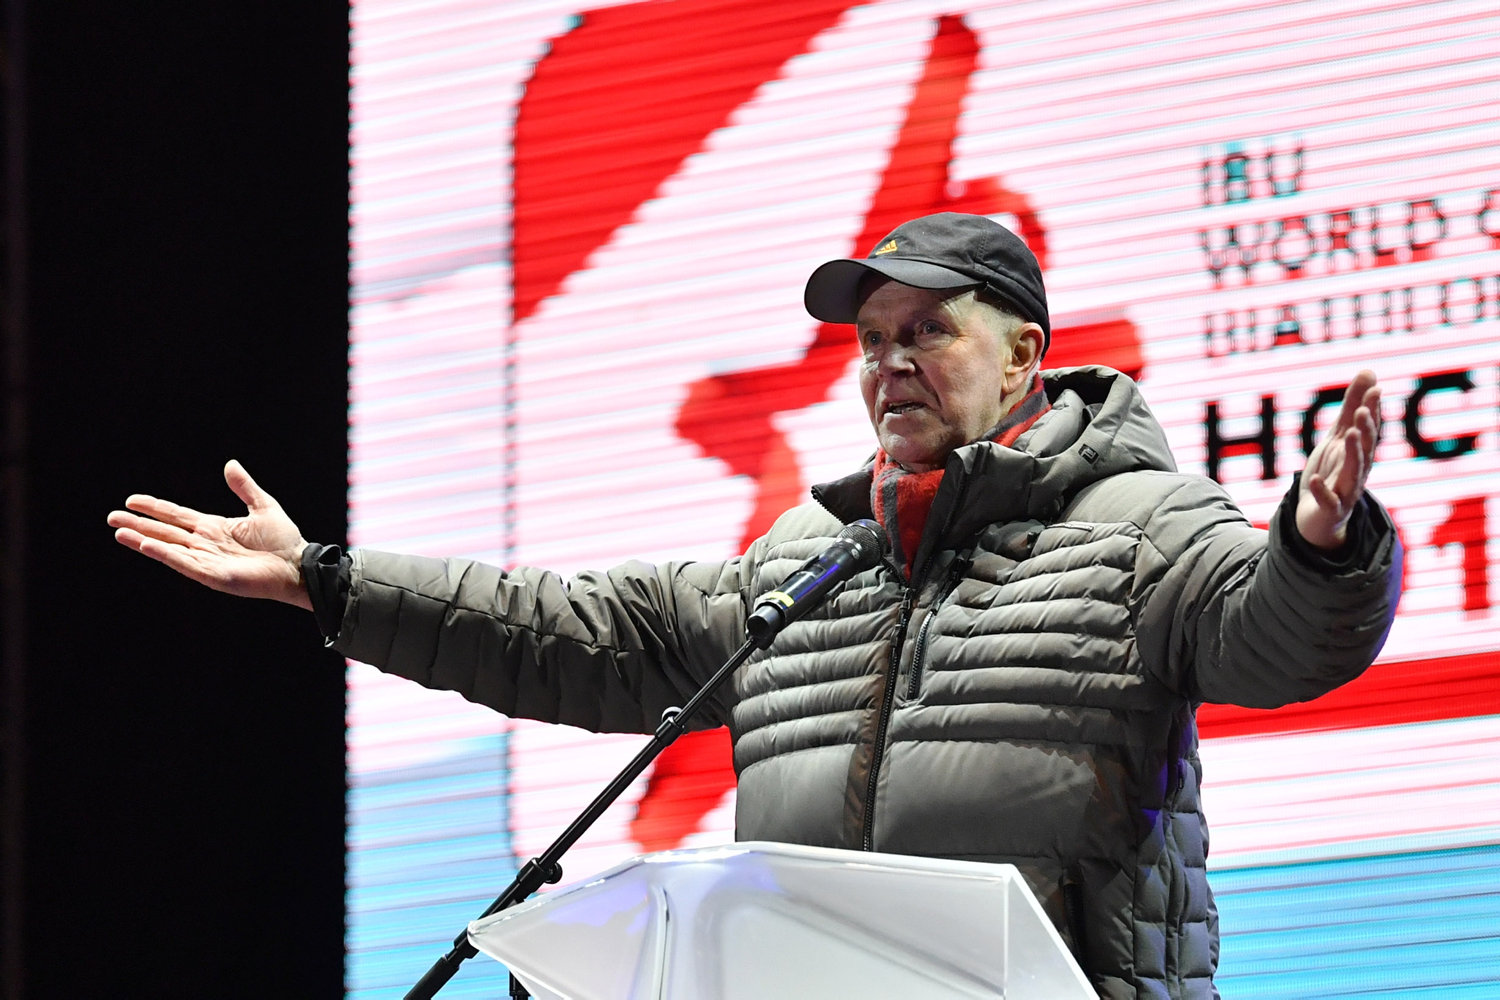 norsk skiskydningspræsident får fængsel for korruption